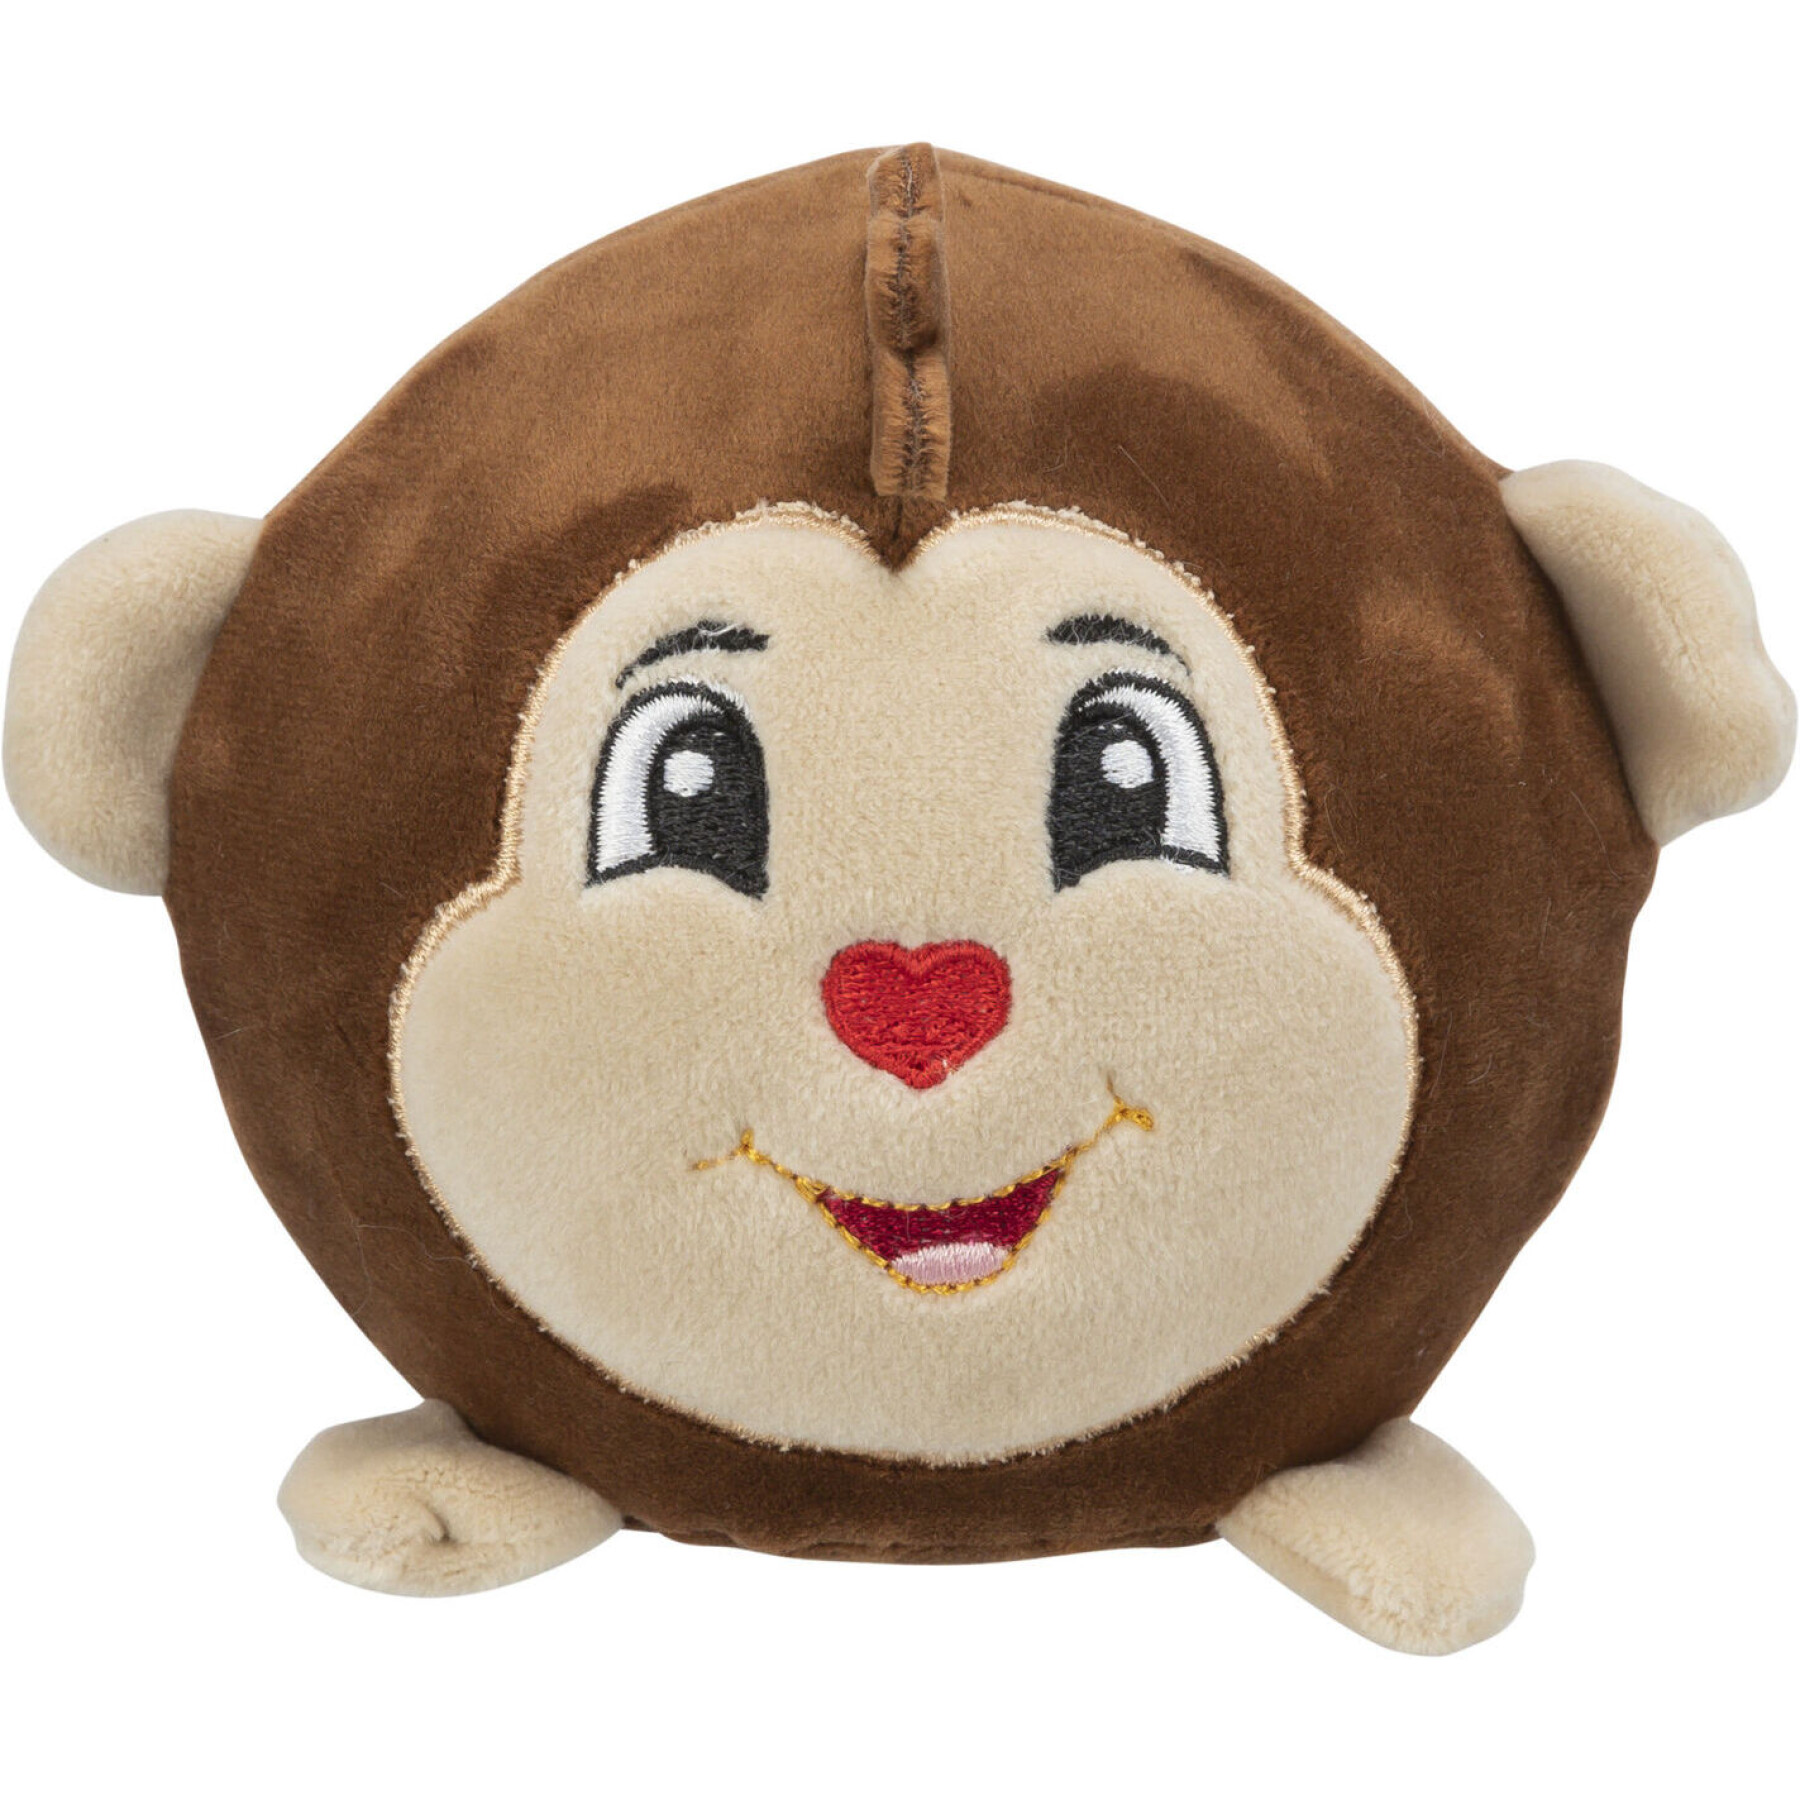 Round monkey plush toy for dogs Trixie (x2)